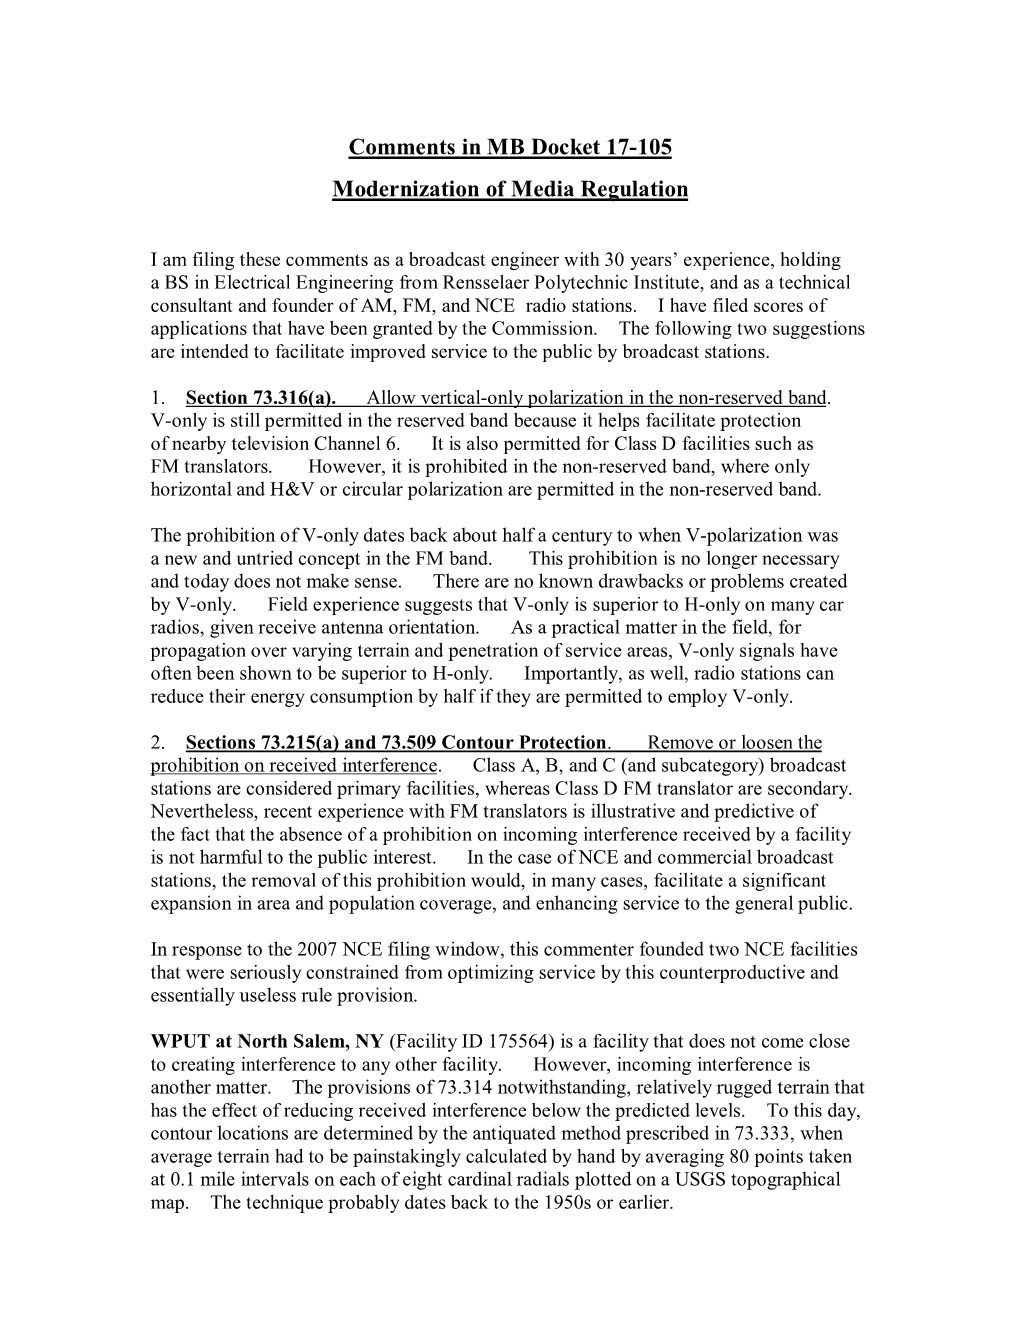 Comments in MB Docket 17-105 Modernization of Media Regulation